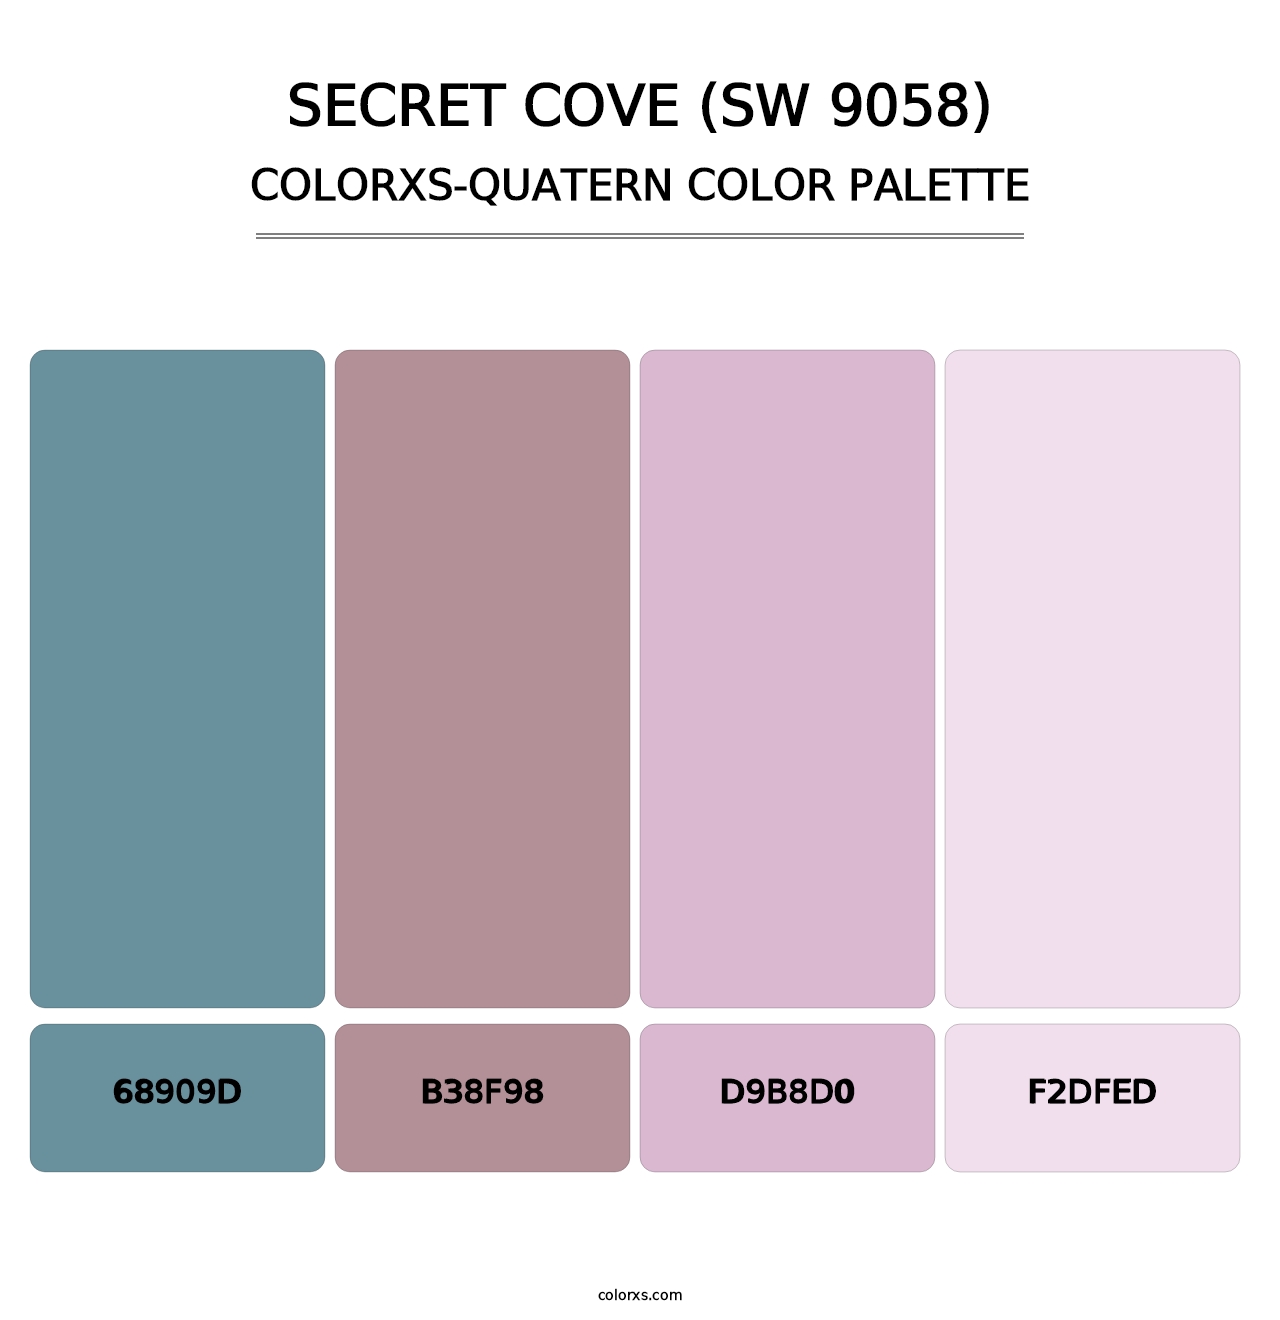 Secret Cove (SW 9058) - Colorxs Quatern Palette